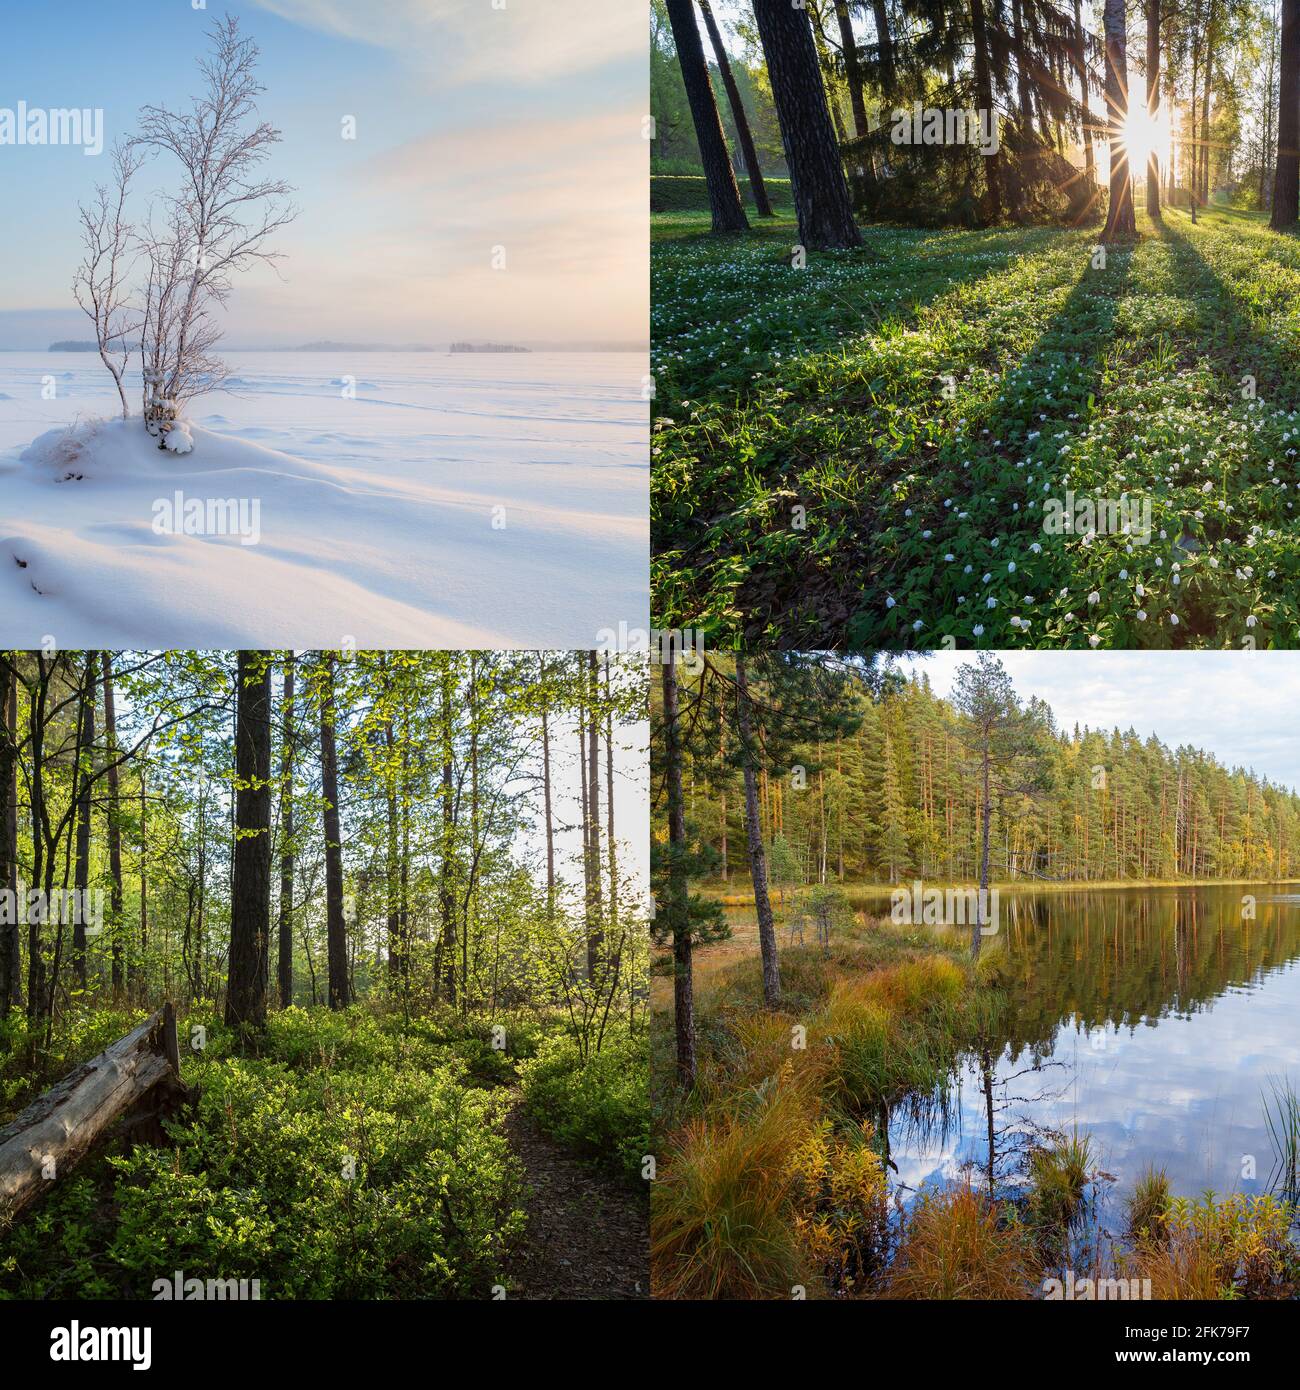 Quattro stagioni in Finlandia: Inverno, primavera, estate e autunno. Splendidi paesaggi in natura. Foto Stock